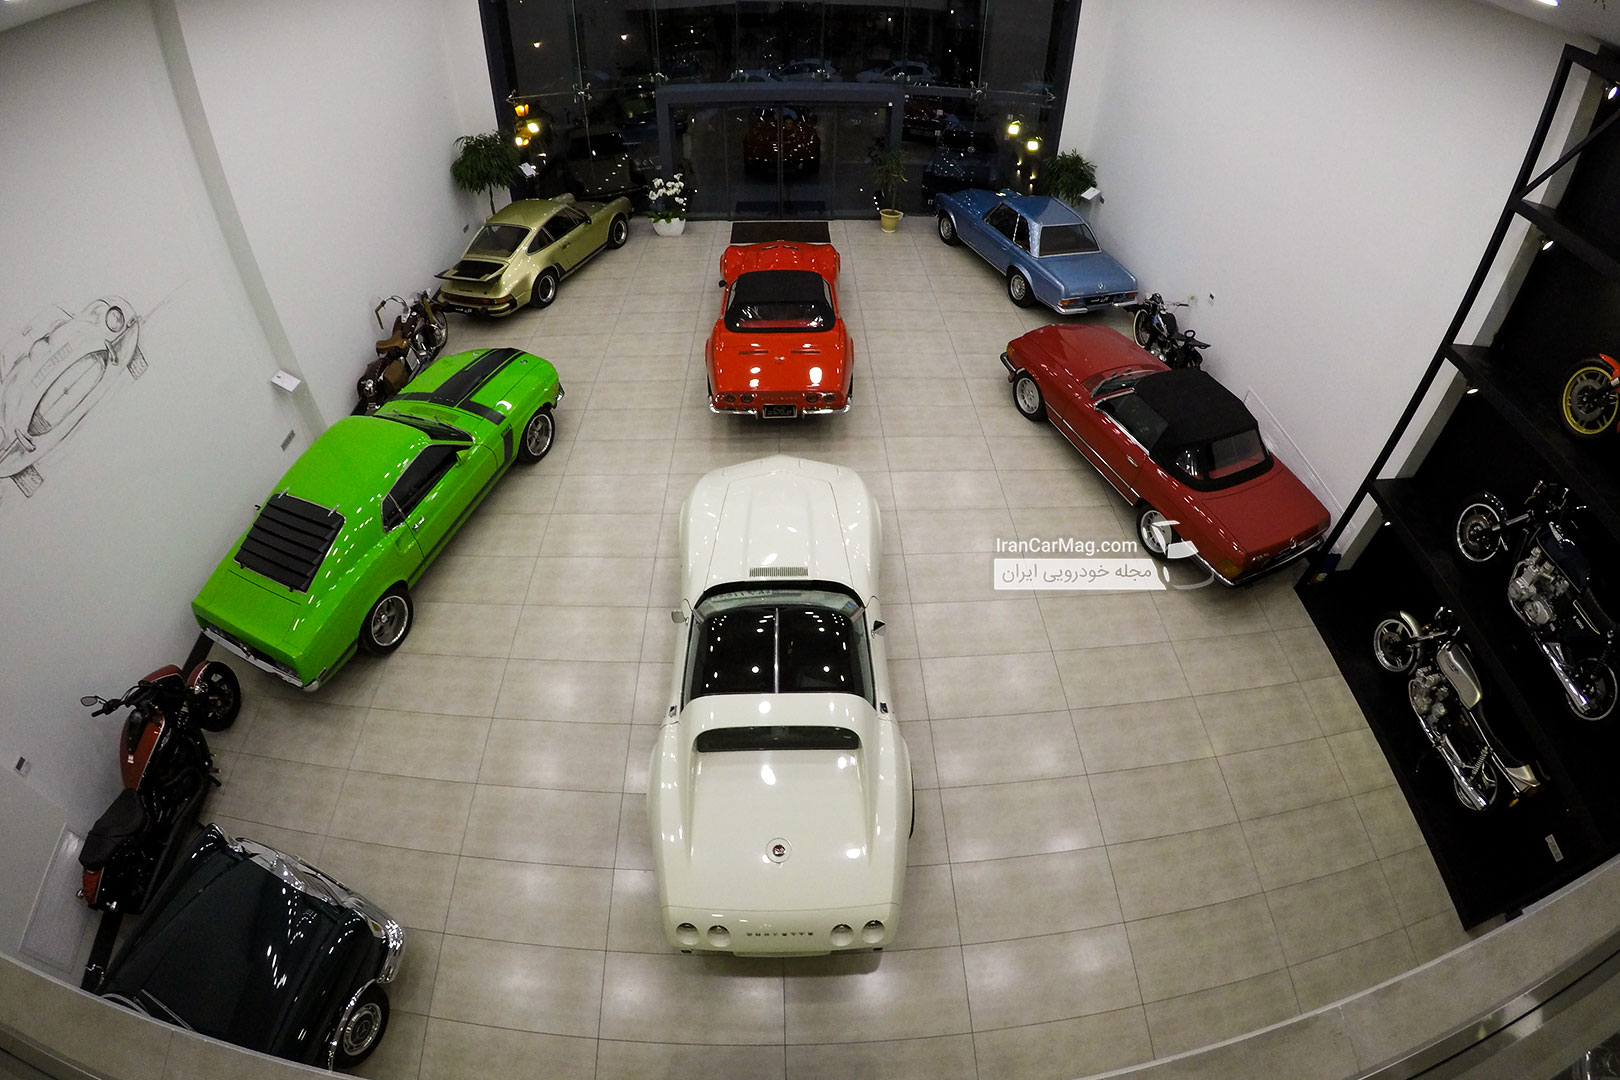  افتتاح گالری هشت، بهشت موتور و خودروهای کلاسیک + تصاویر اختصاصی و فیلم